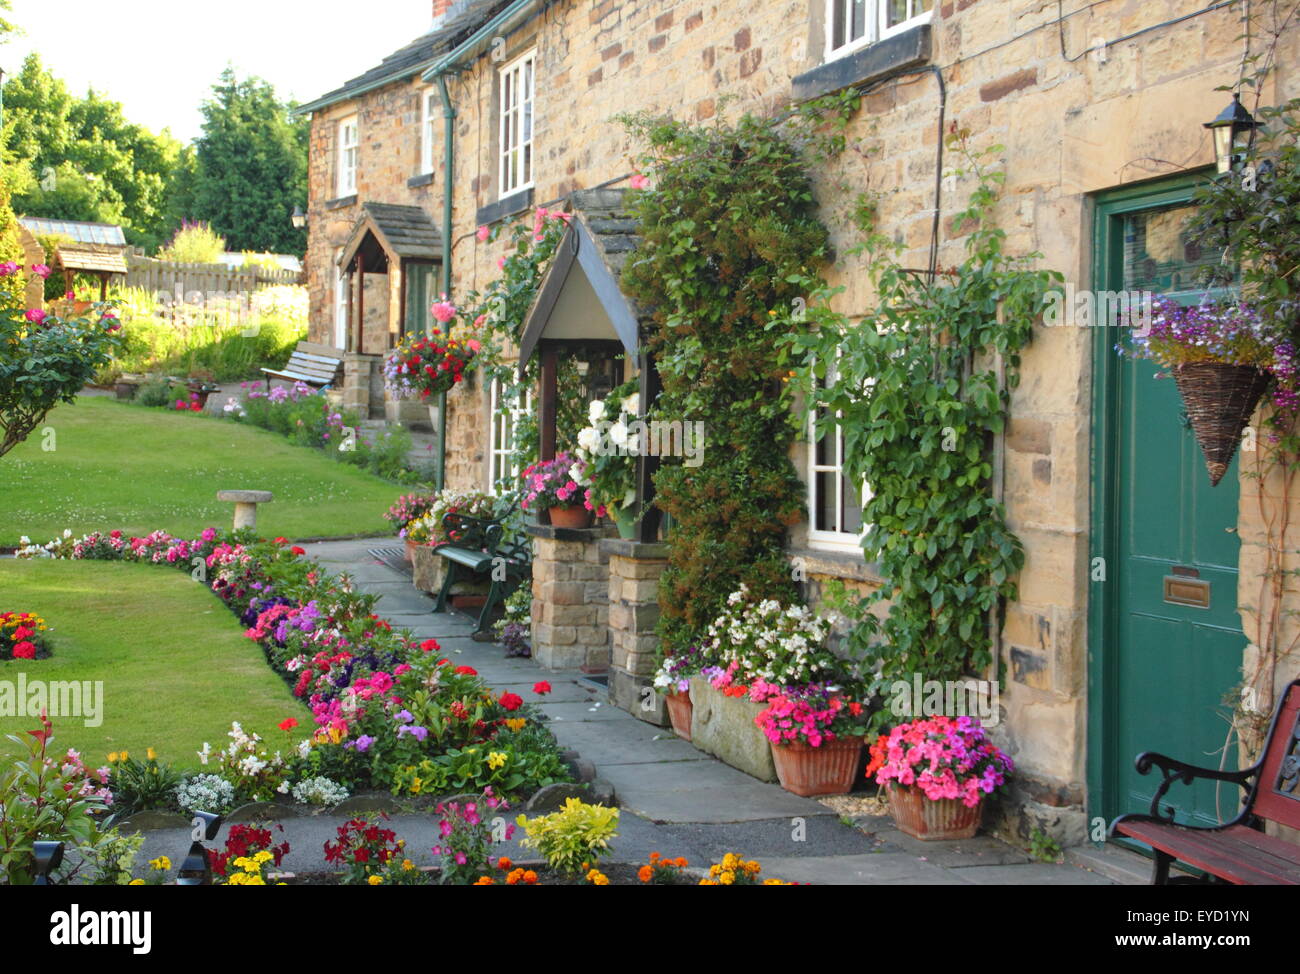 Construit en pierre traditionnelle britannique chalets avec jardin immaculé dans une succession de frontières English Village, South Yorkshire, Angleterre, Royaume-Uni Banque D'Images